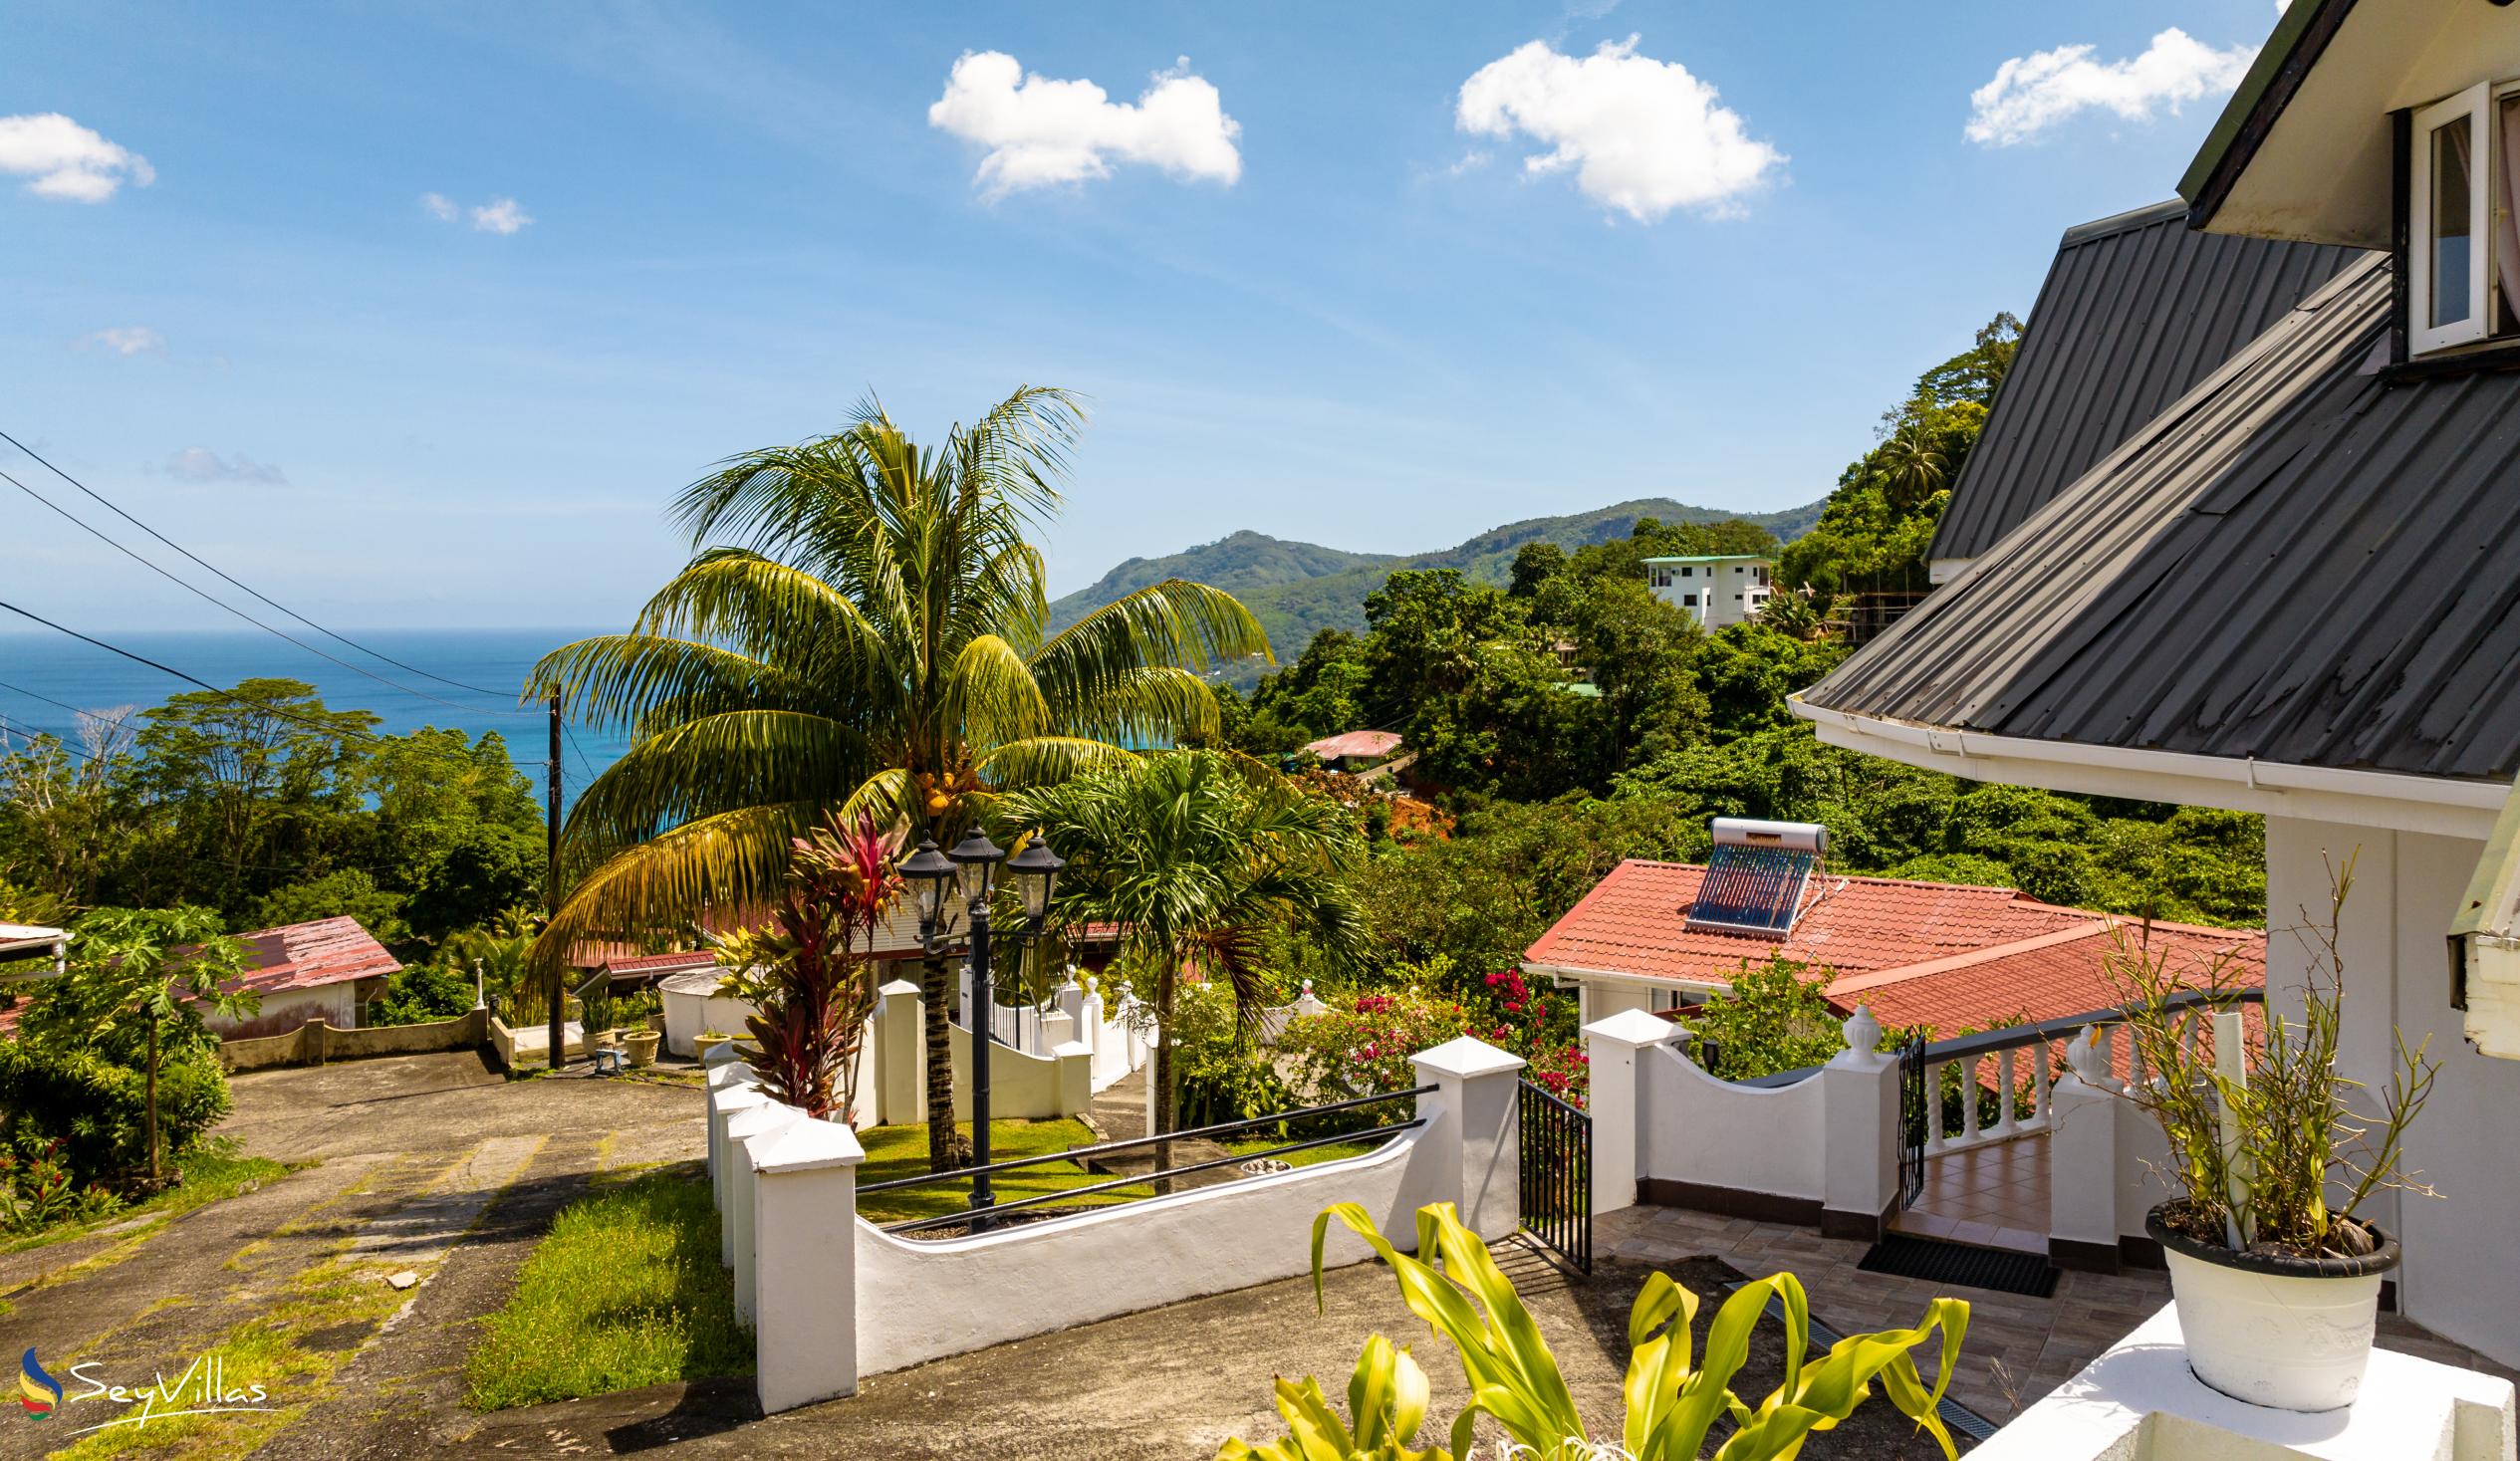 Photo 3: Casuarina Hill Villa - Outdoor area - Mahé (Seychelles)